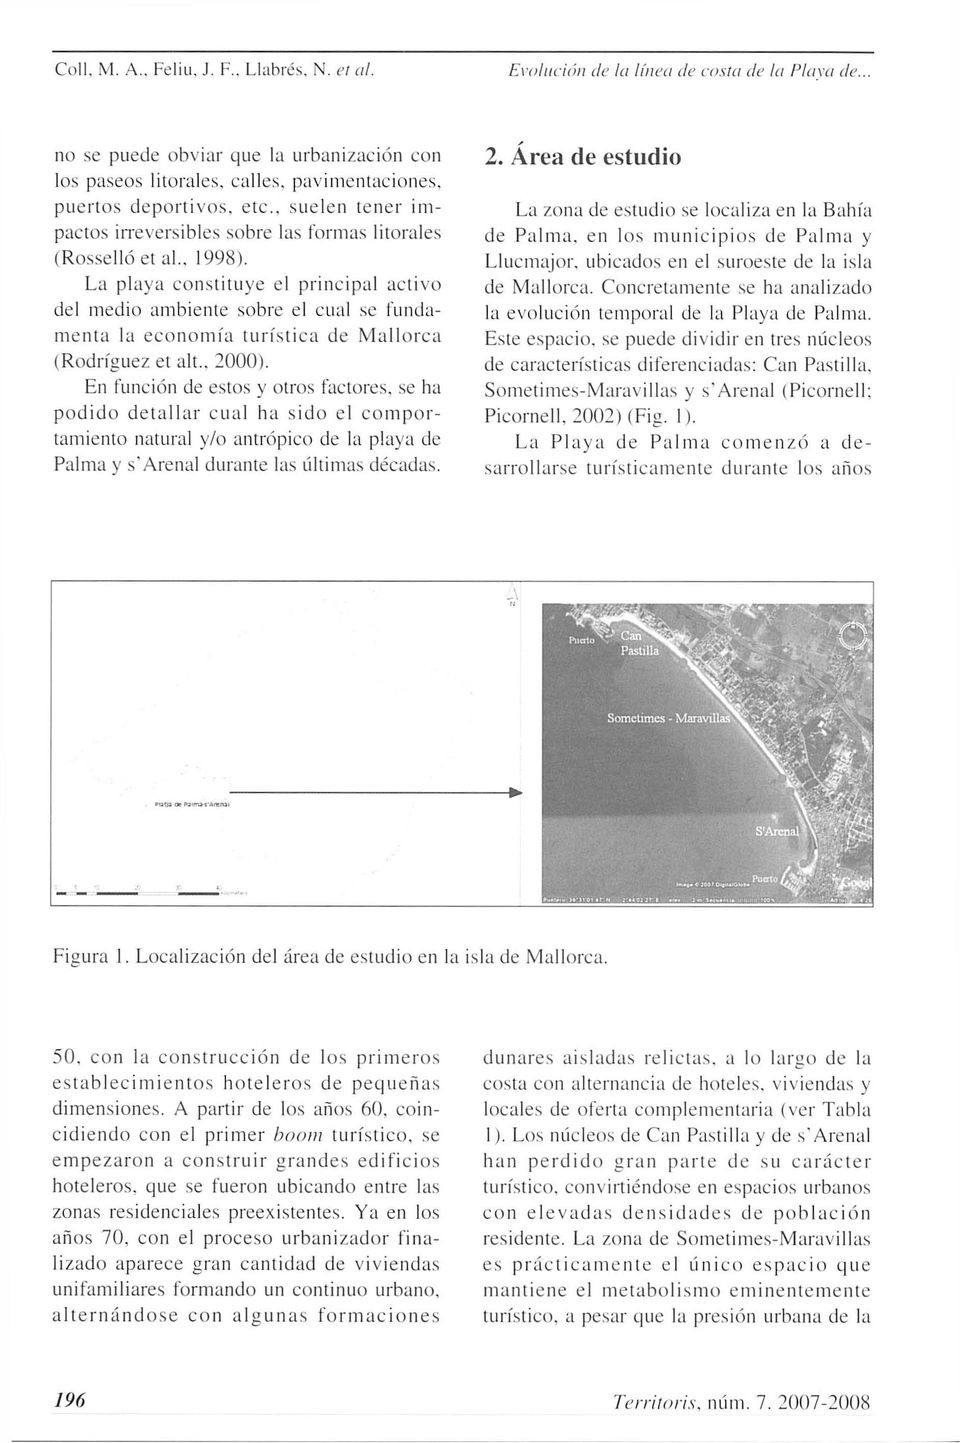 . 1998). La playa constituye el principal activo del medio ambiente sobre el cual se fundamenta la economía turística de Mallorca (Rodríguez et alt.. 2000).